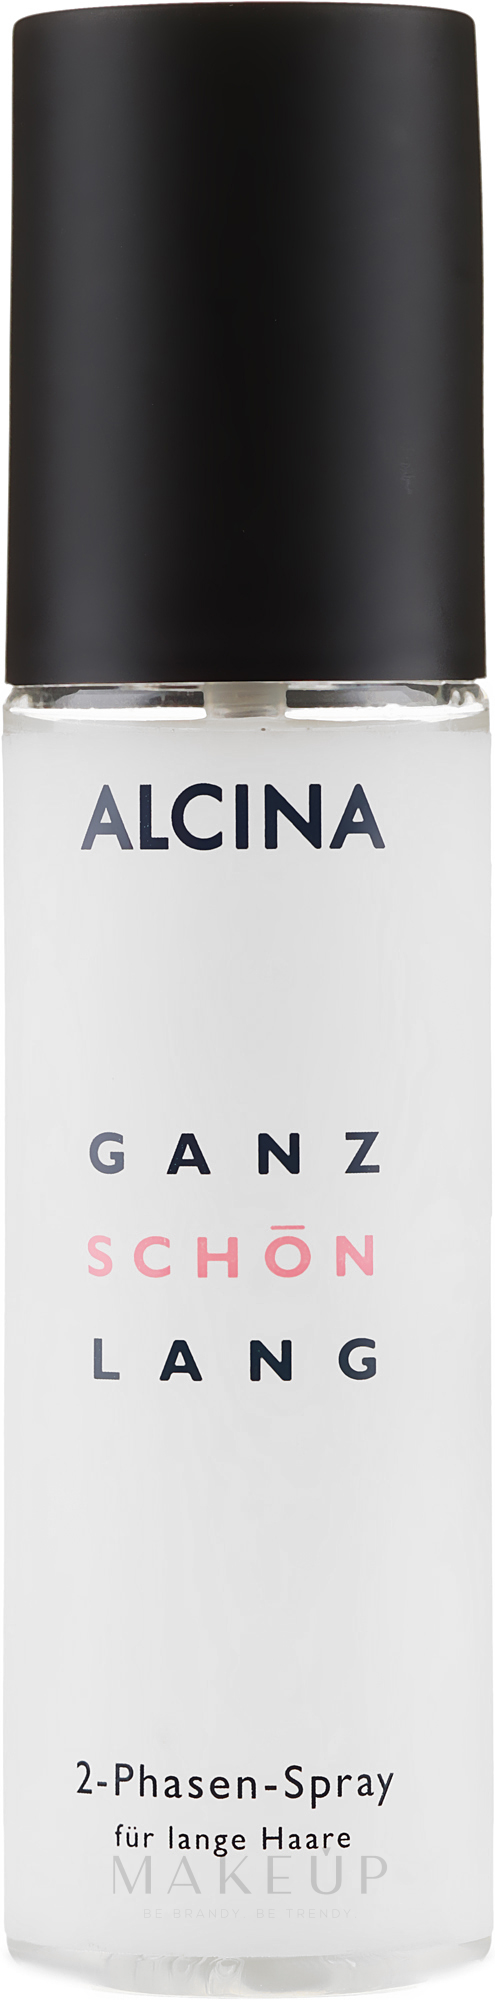 Pflegendes 2-Phasen Spray für lange Haare - Alcina Ganz Schon Lang 2-Phasen-Spray — Bild 125 ml